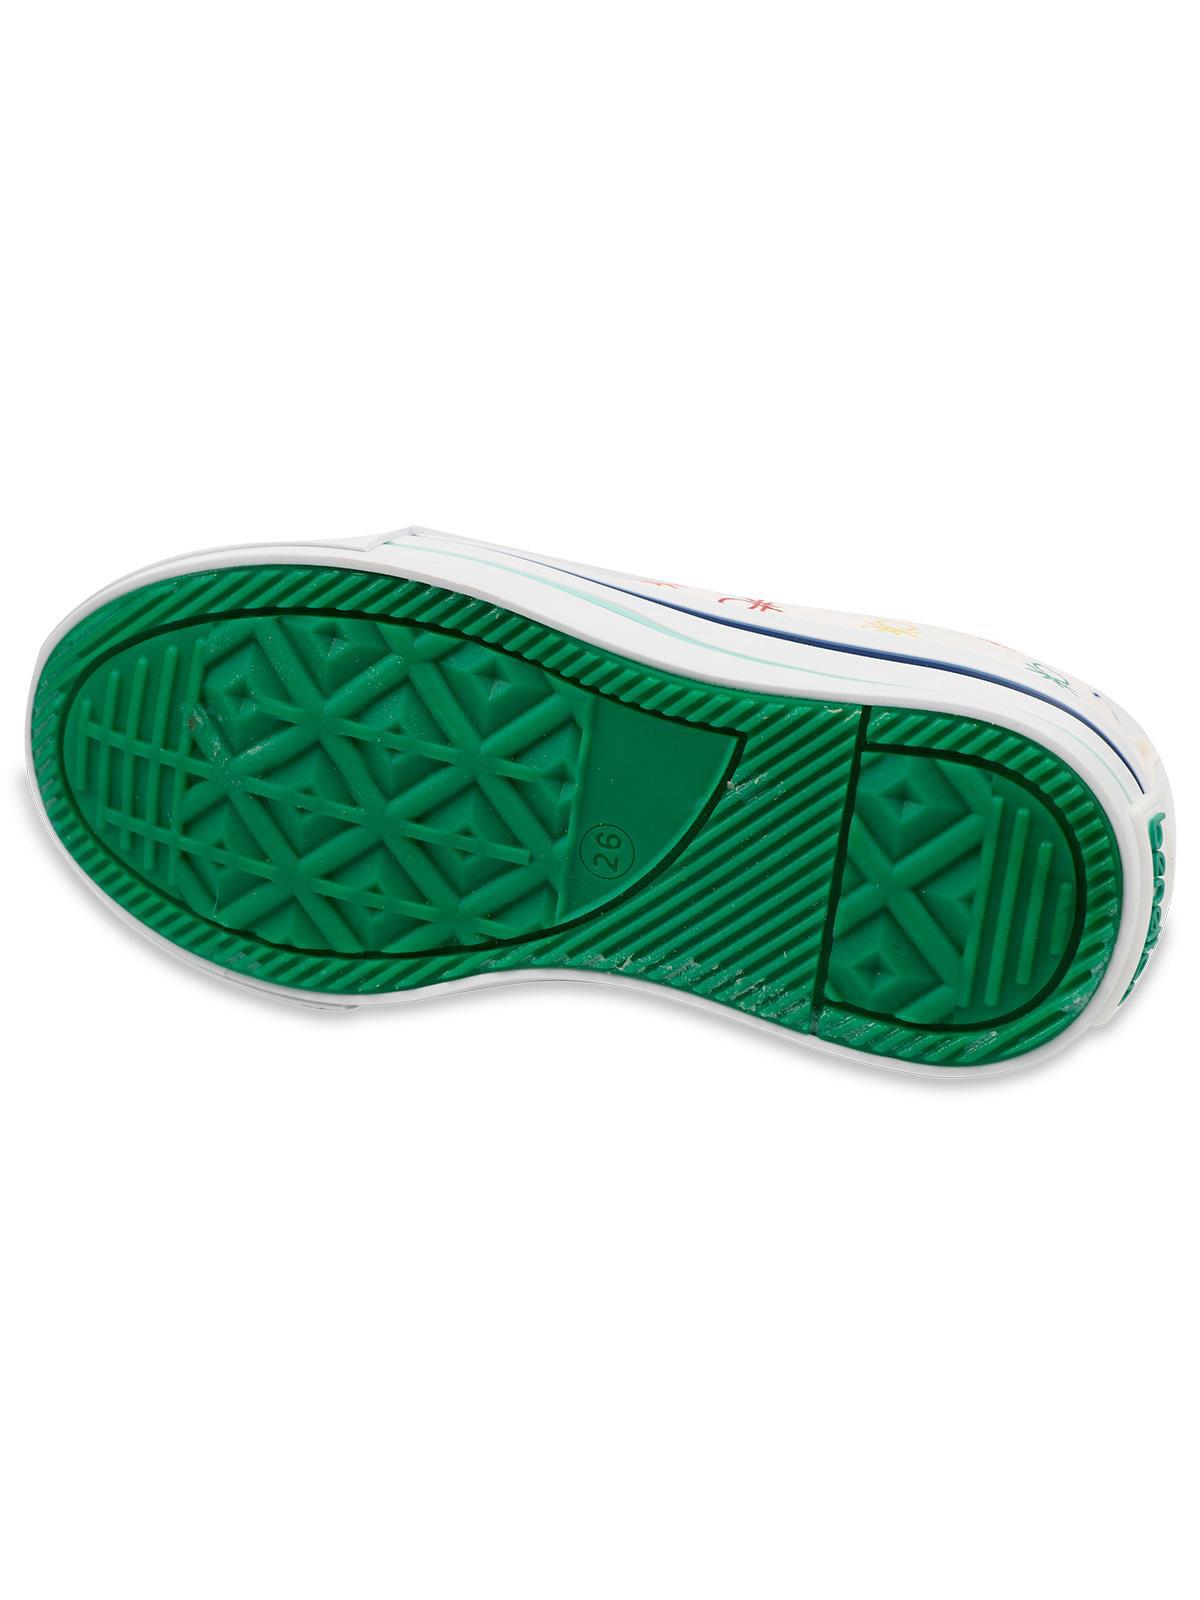 Benetton Kız Çocuk Spor Ayakkabı 31-35 Numara Beyaz